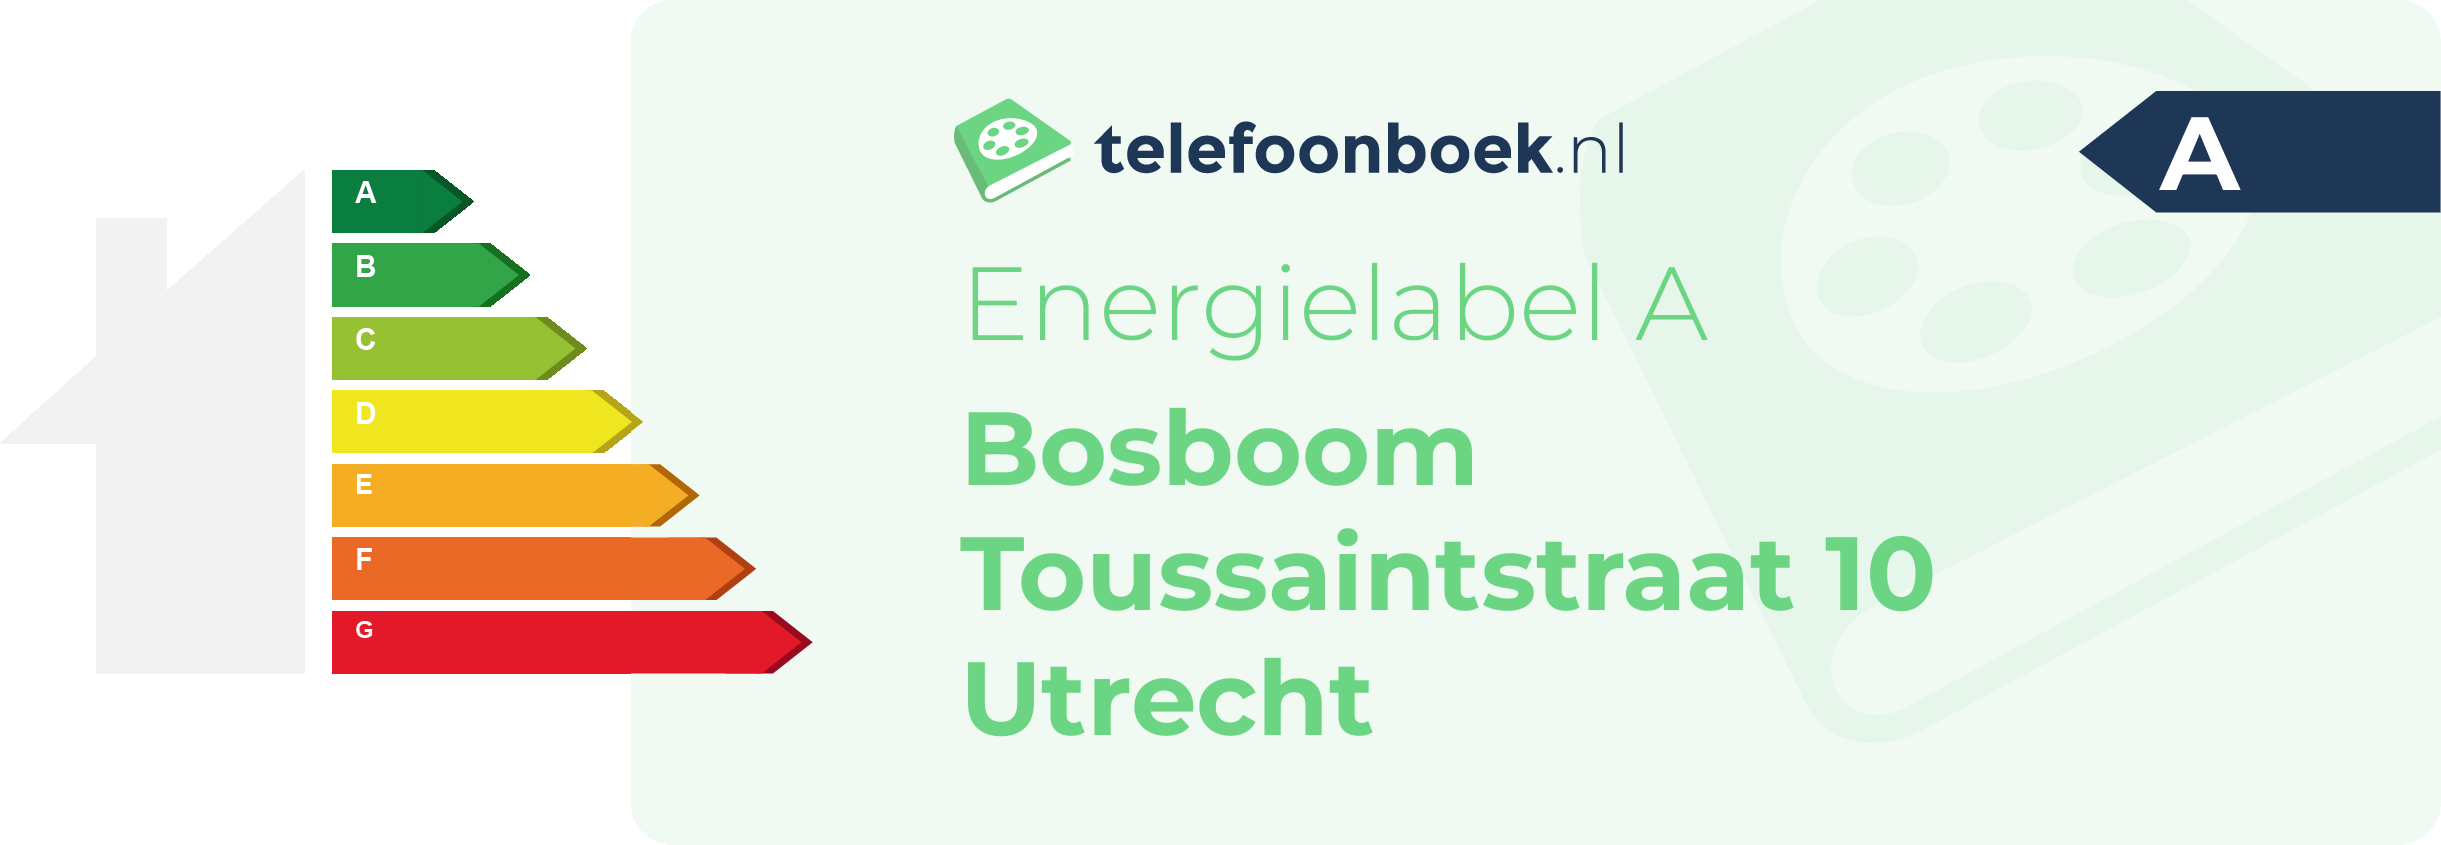 Energielabel Bosboom Toussaintstraat 10 Utrecht